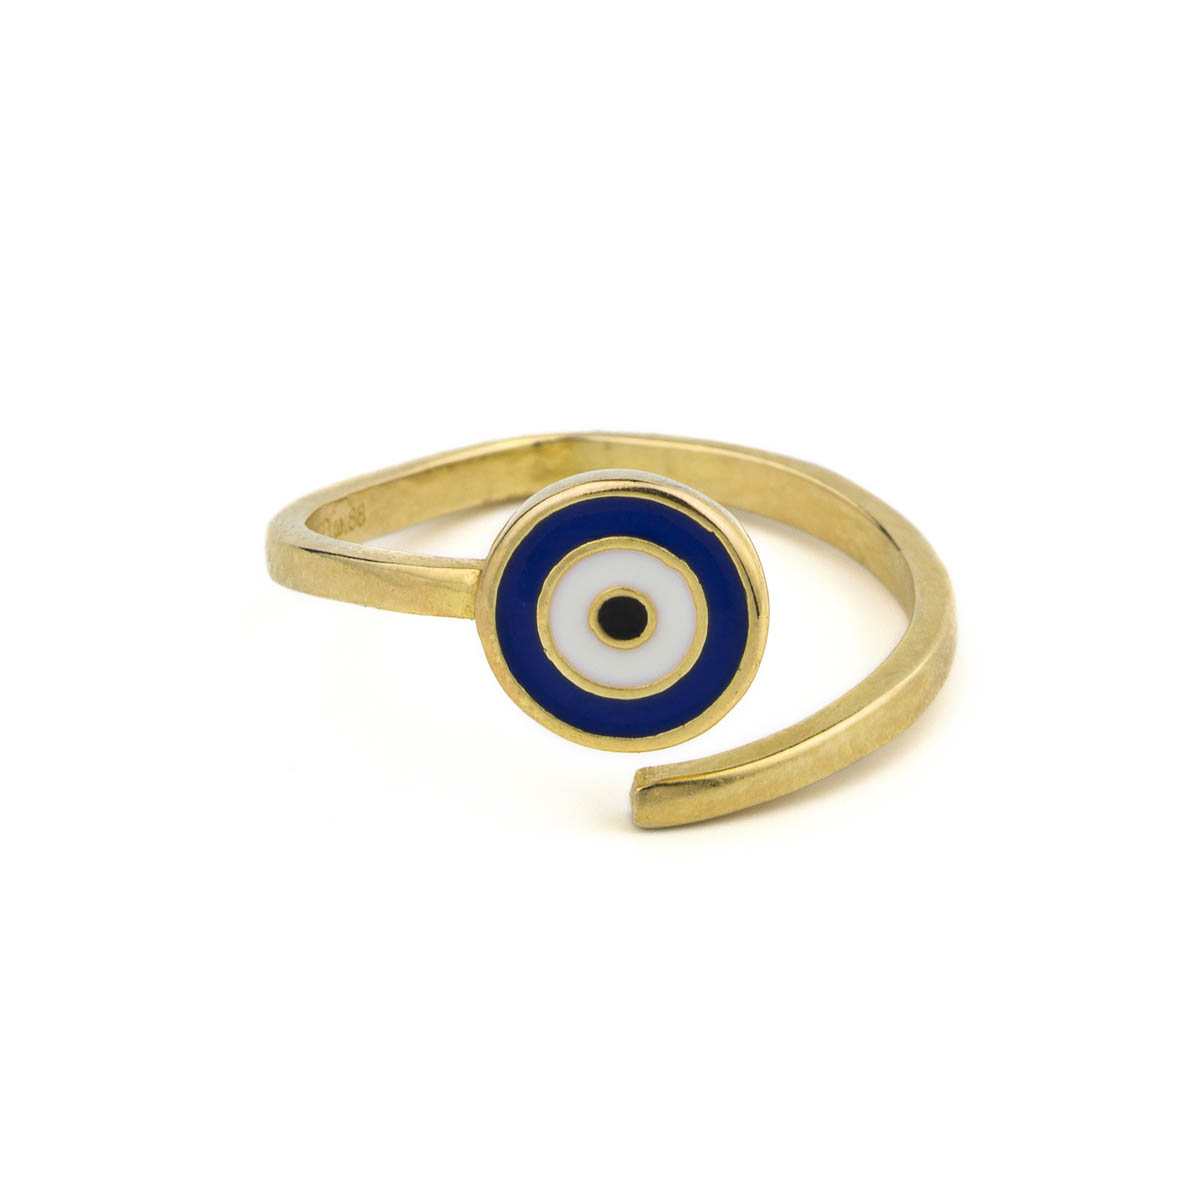 Gold Plated Adjustable Evil Eye Ring - blue white enamel